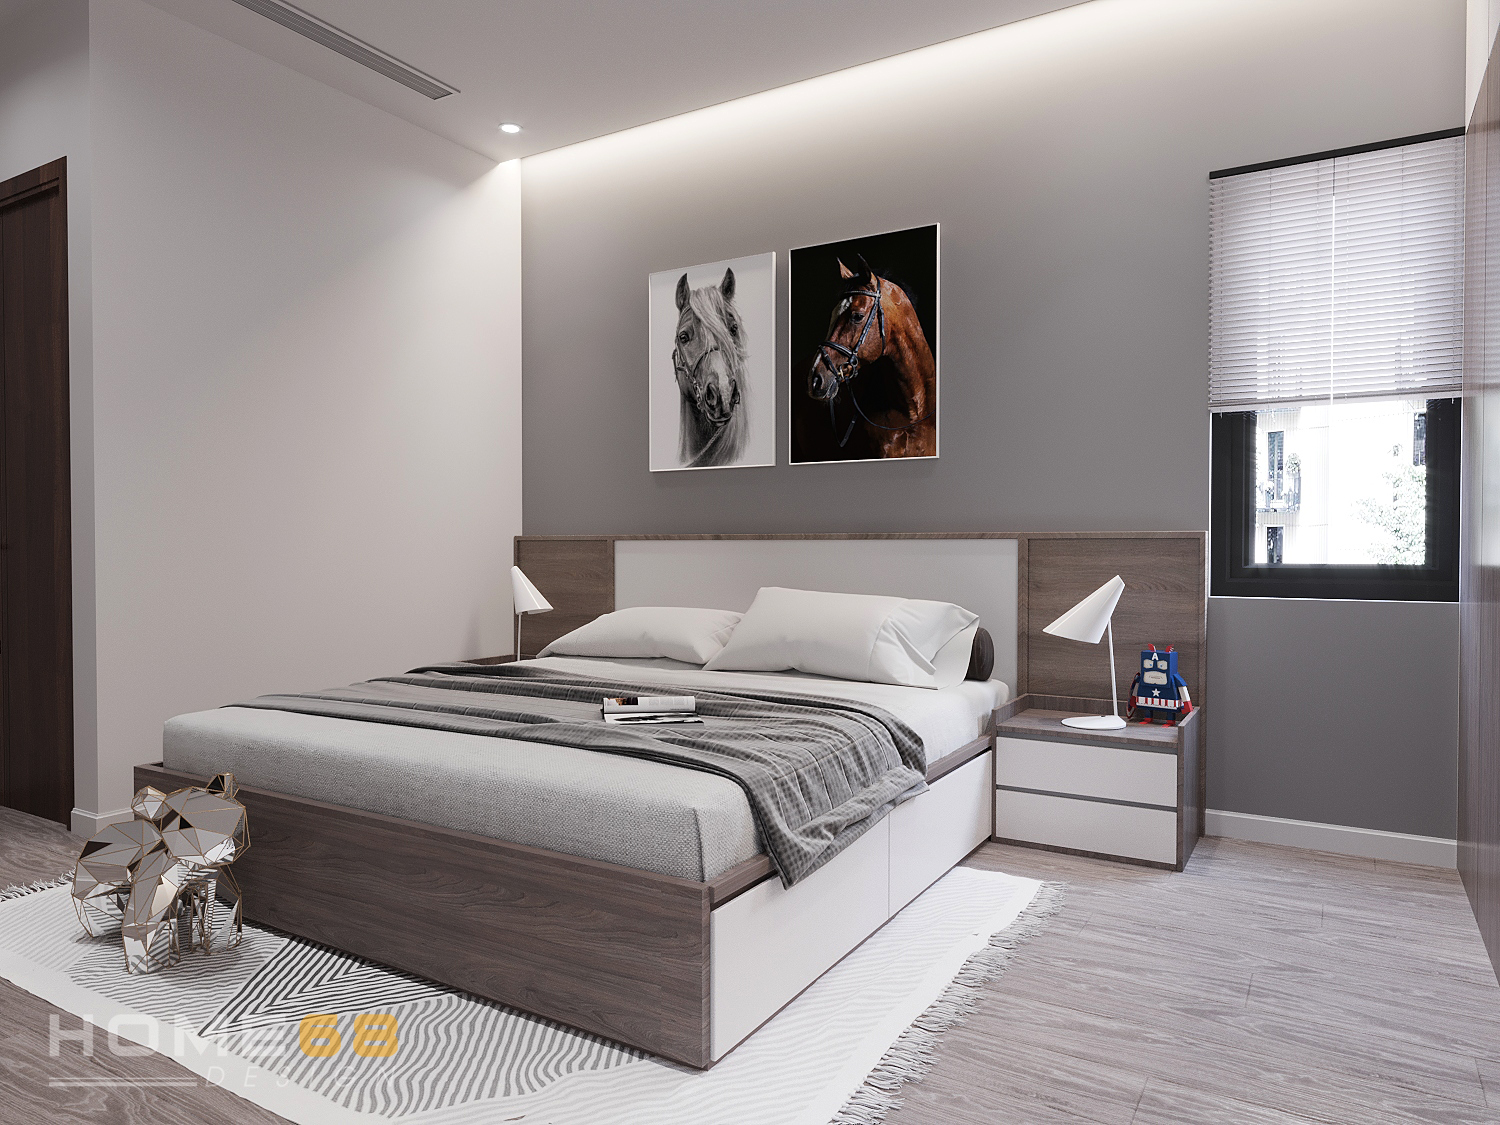 Thiết kế nội thất phòng ngủ khách hiện đại, đơn giản tại Hải Phòng